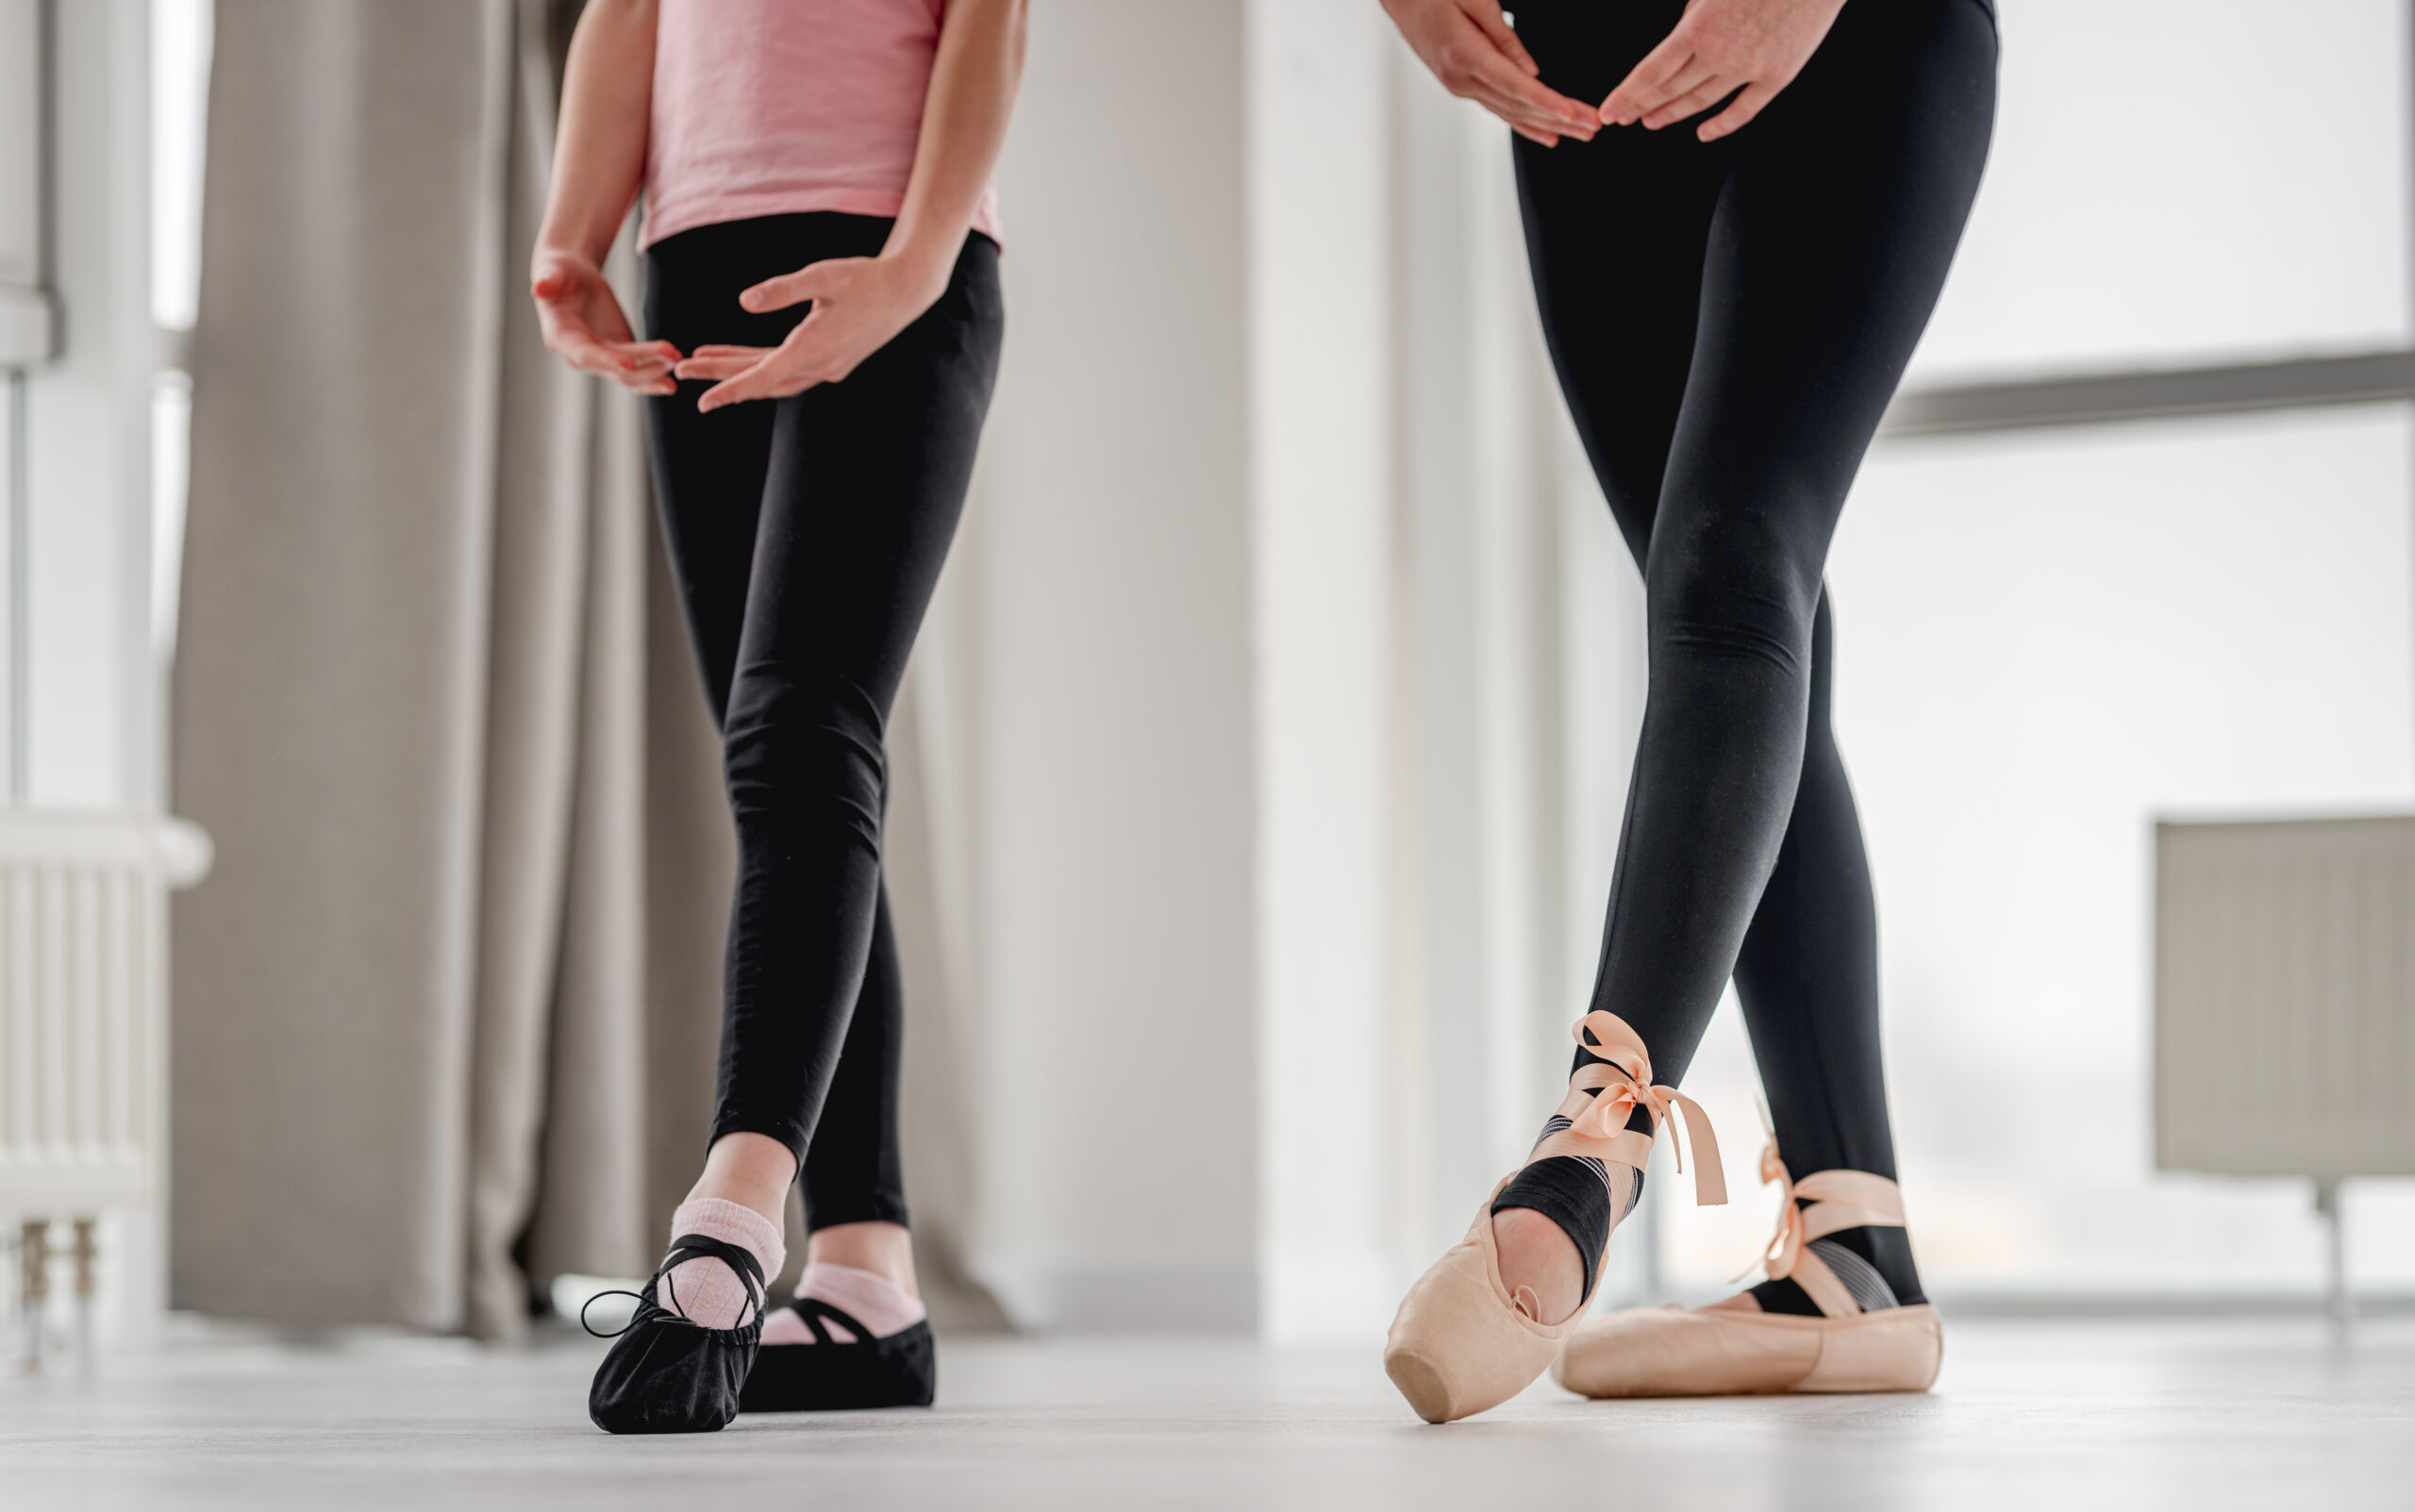 adults dance ballet shoes black leggings dance class